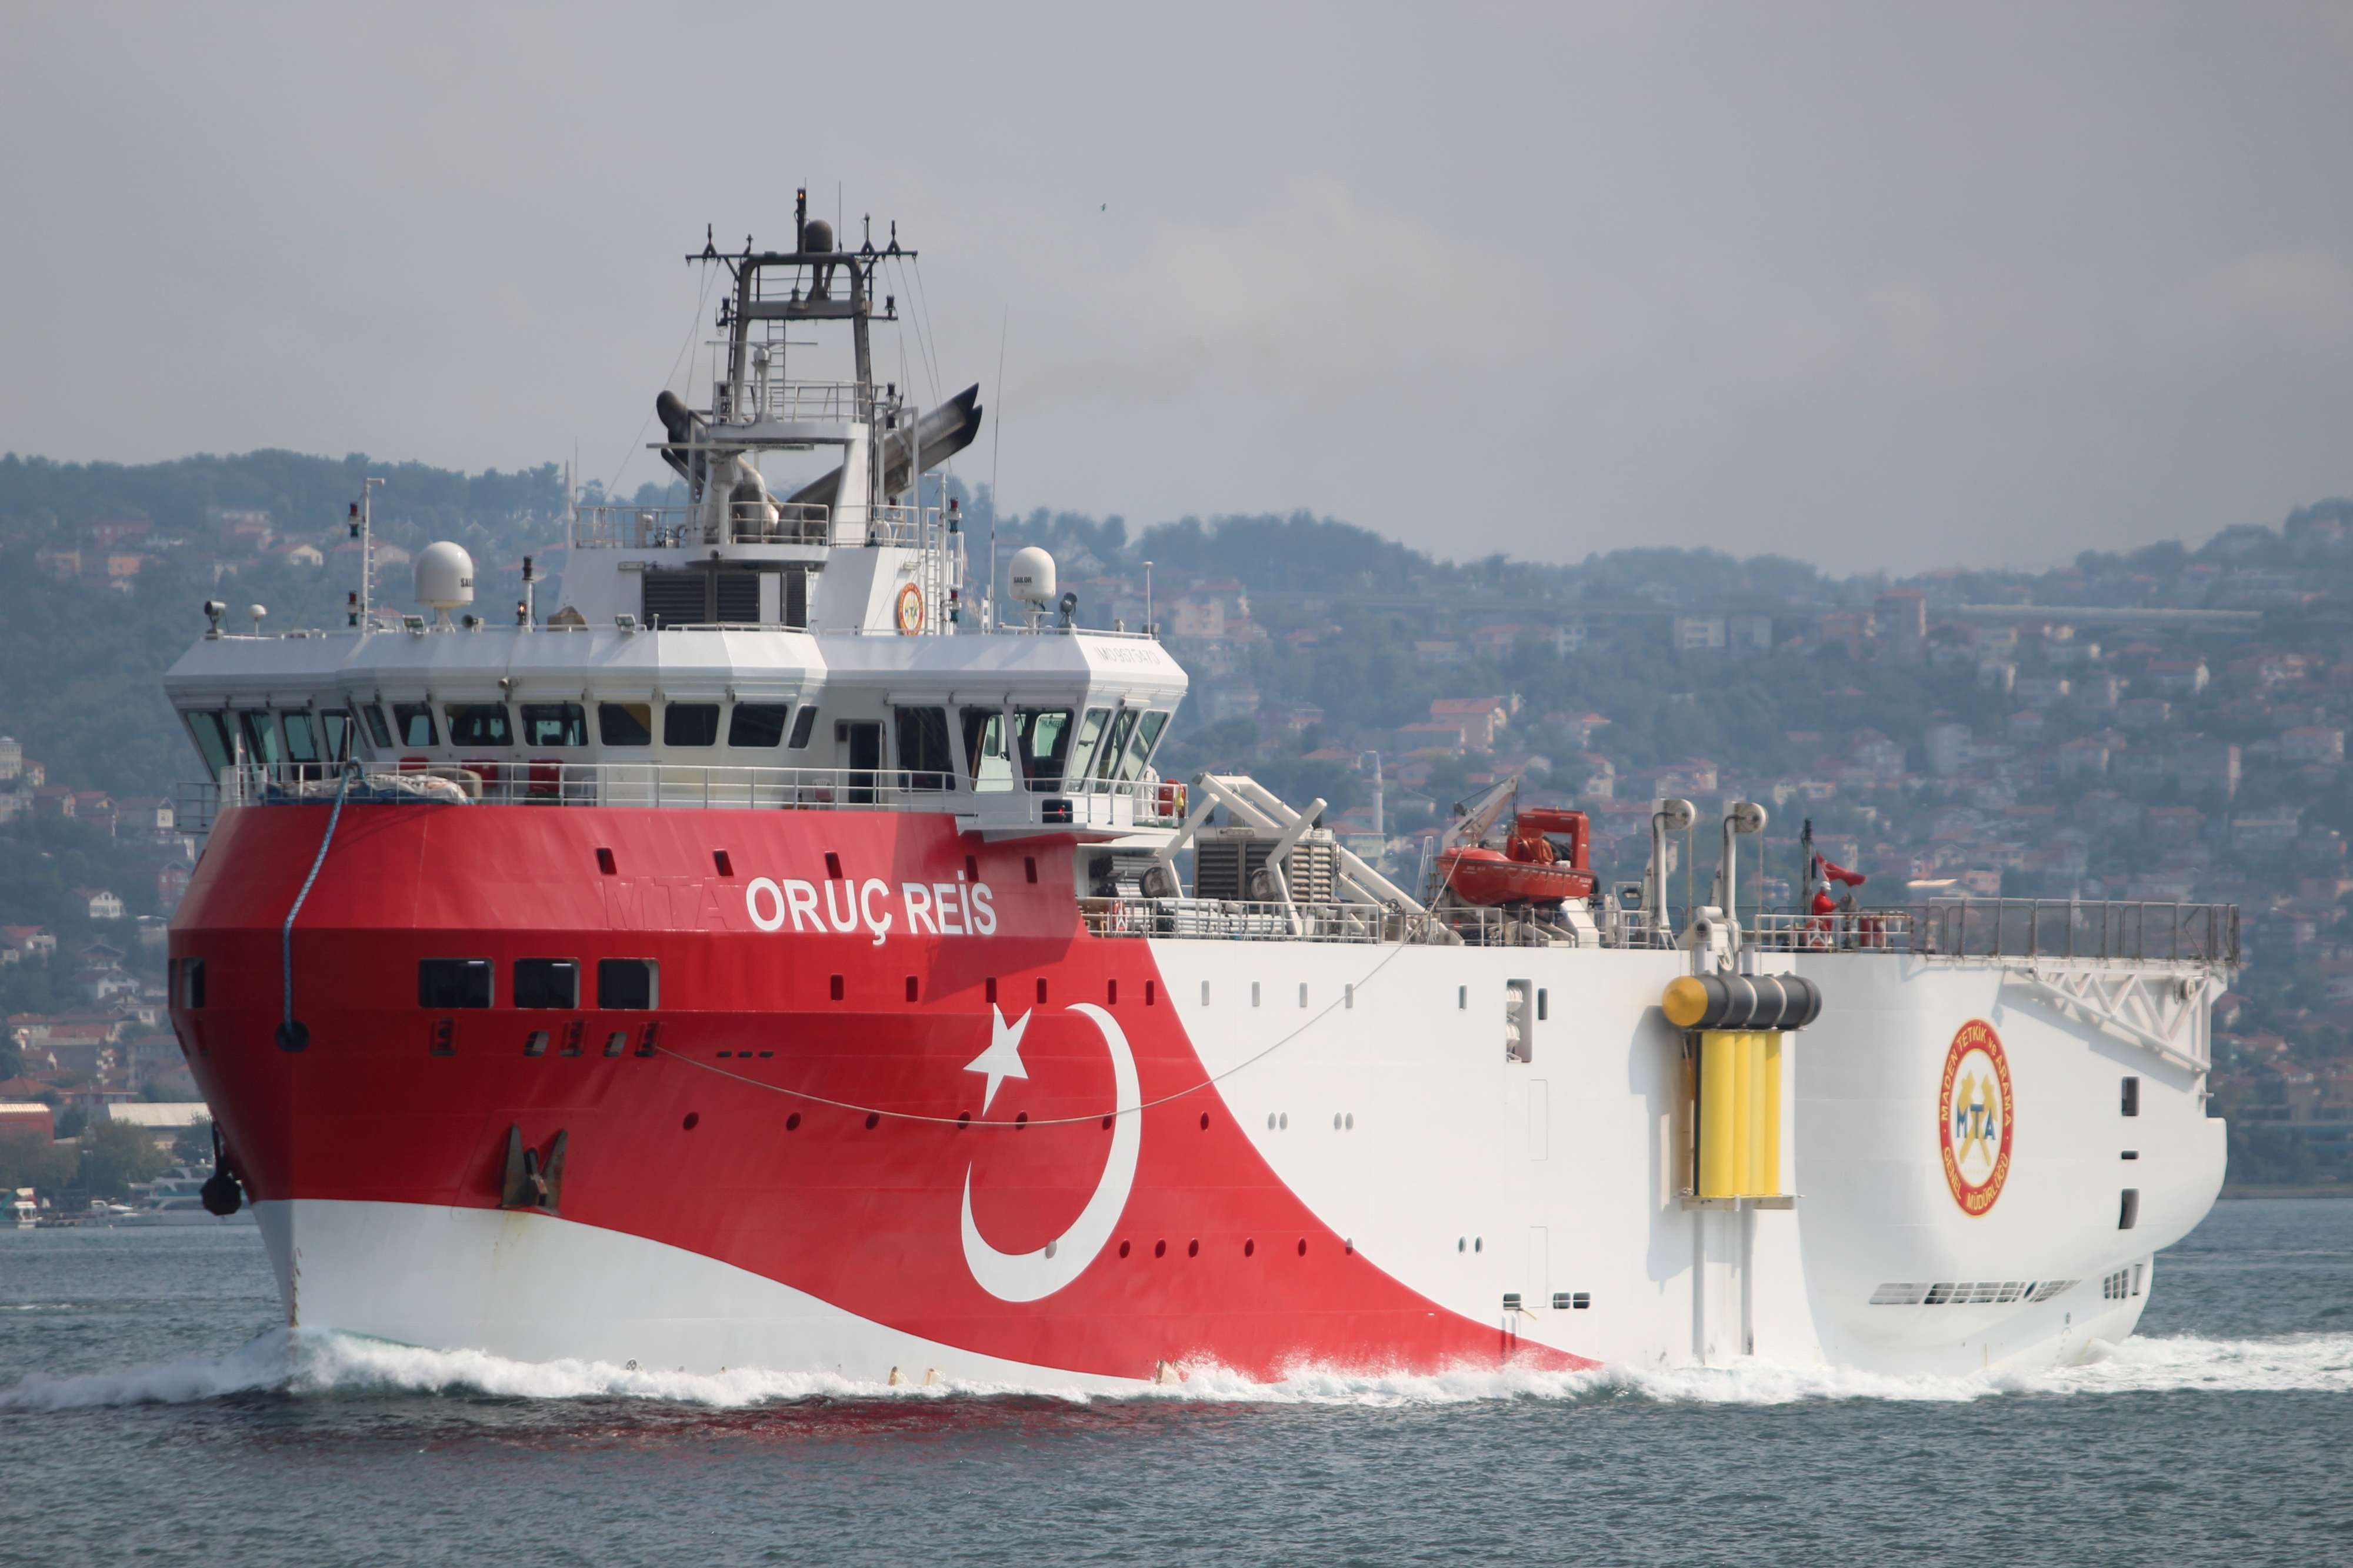 سفينة التنقيب أوروتش رئيس تعود إلى السواحل التركية